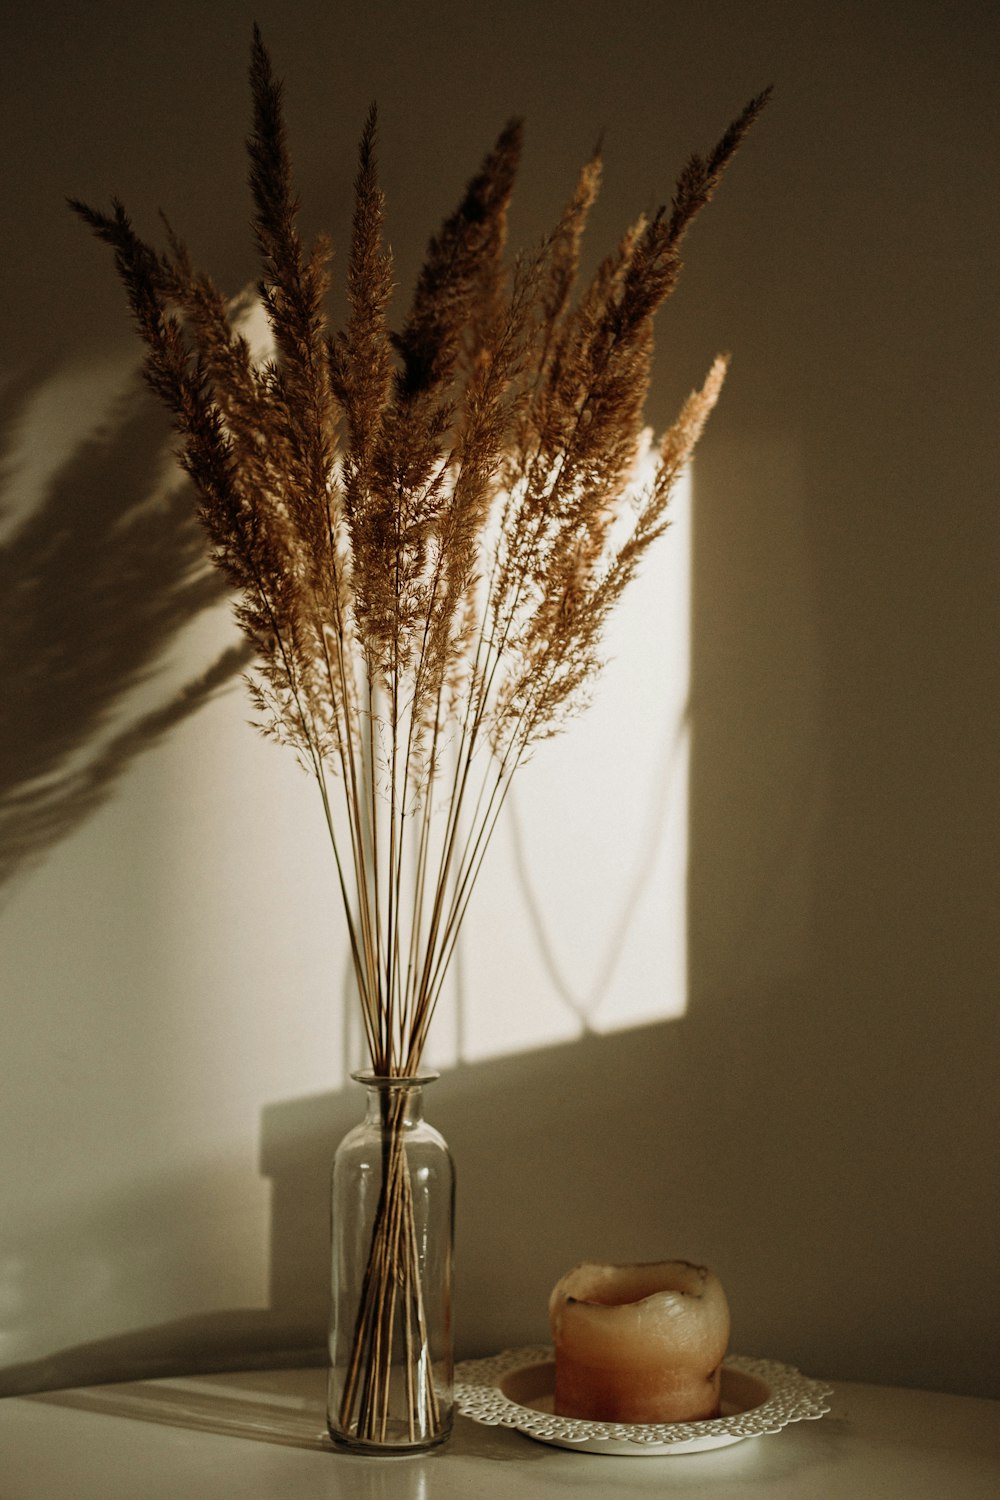 透明なガラスの花瓶に描かれた茶色の植物